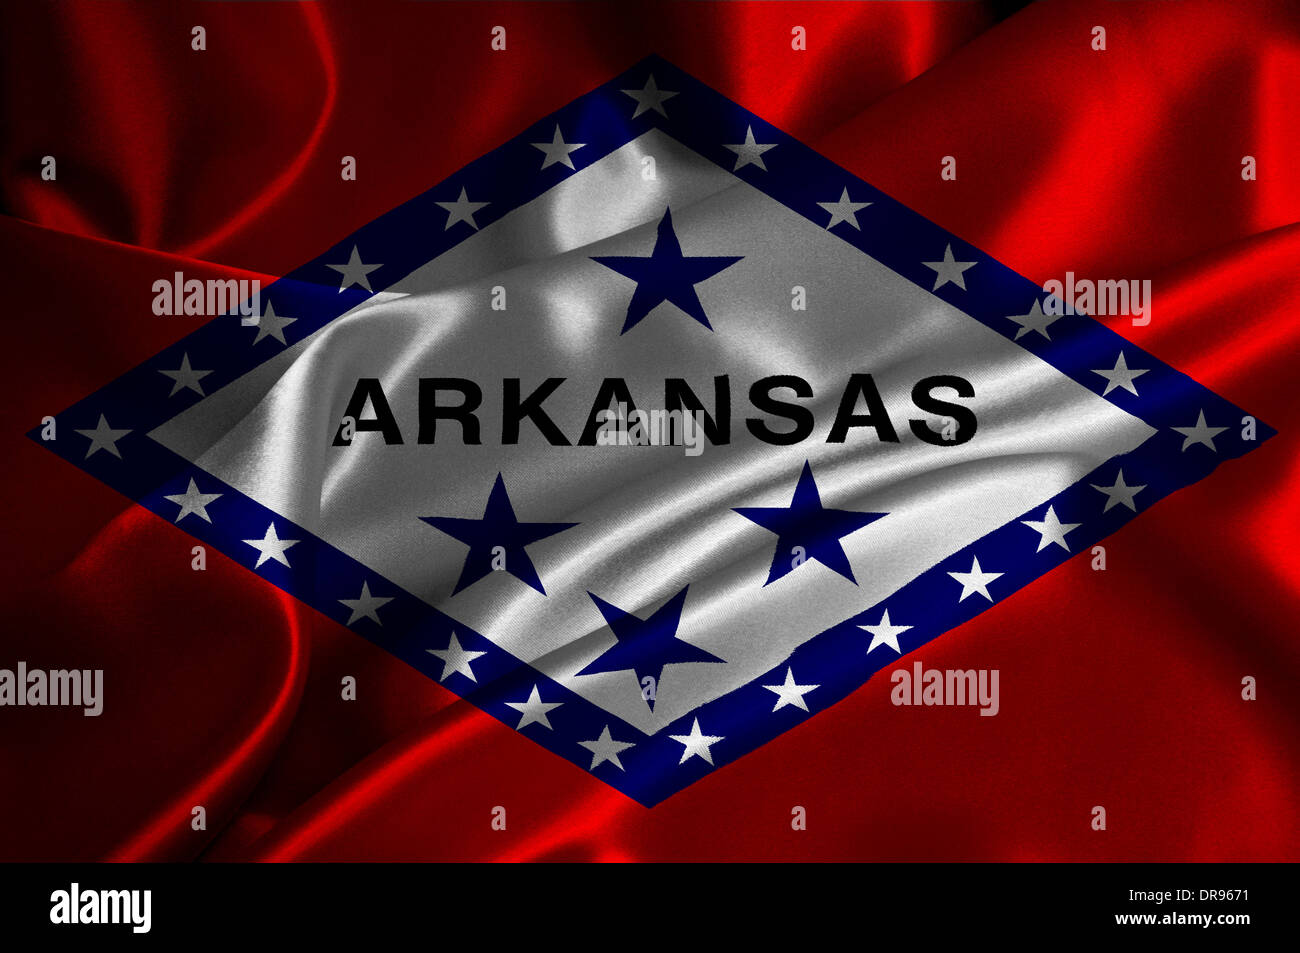 Arkansas flag on satin texture. Stock Photo